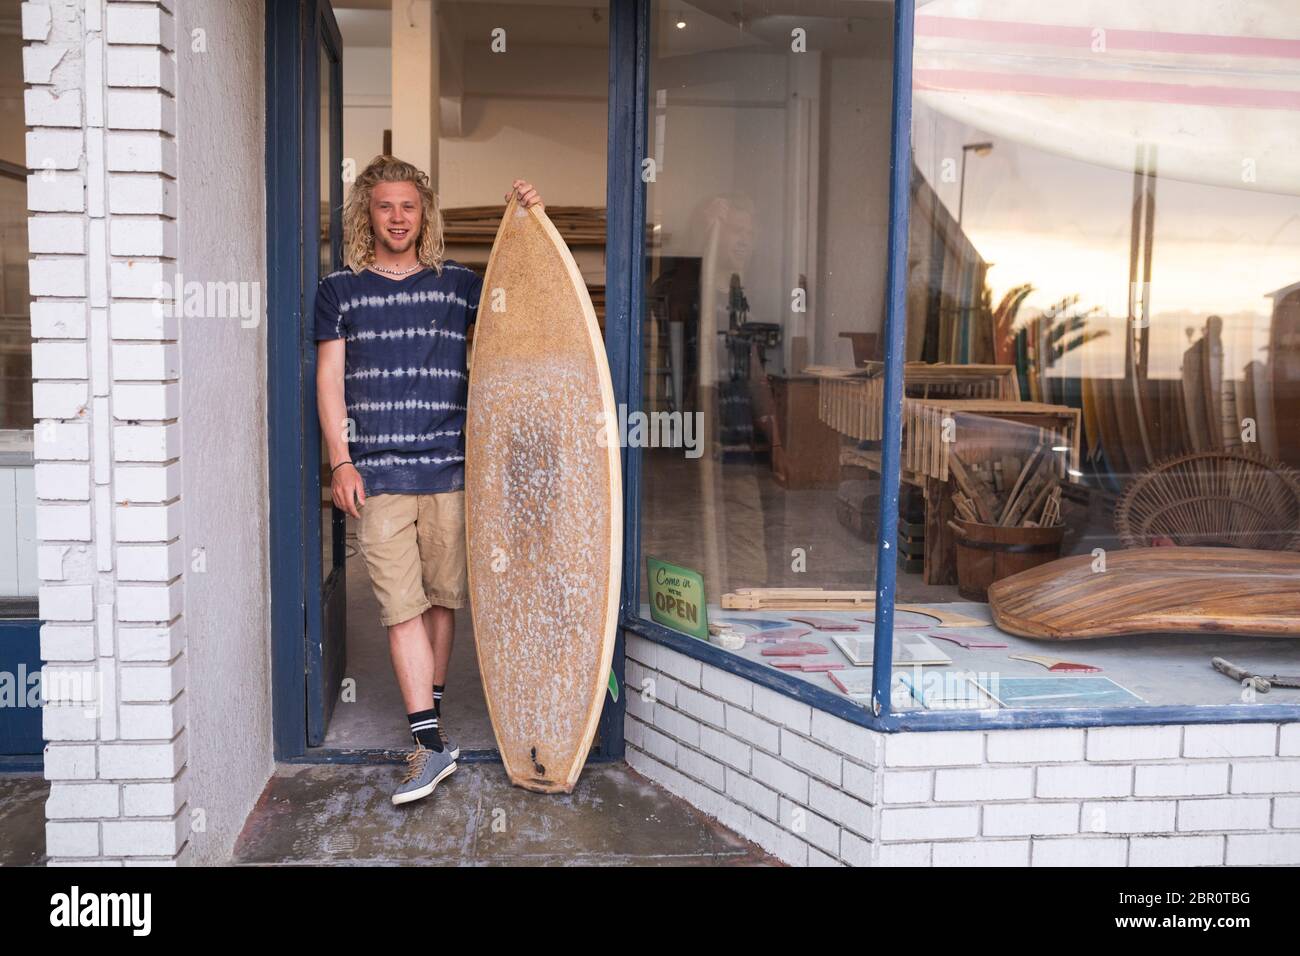 Kaukasischer männlicher Surfbretthersteller, der sich an einer Tür des Eingangs lehnt und ein neues Surfbrett hält und lächelt Stockfoto